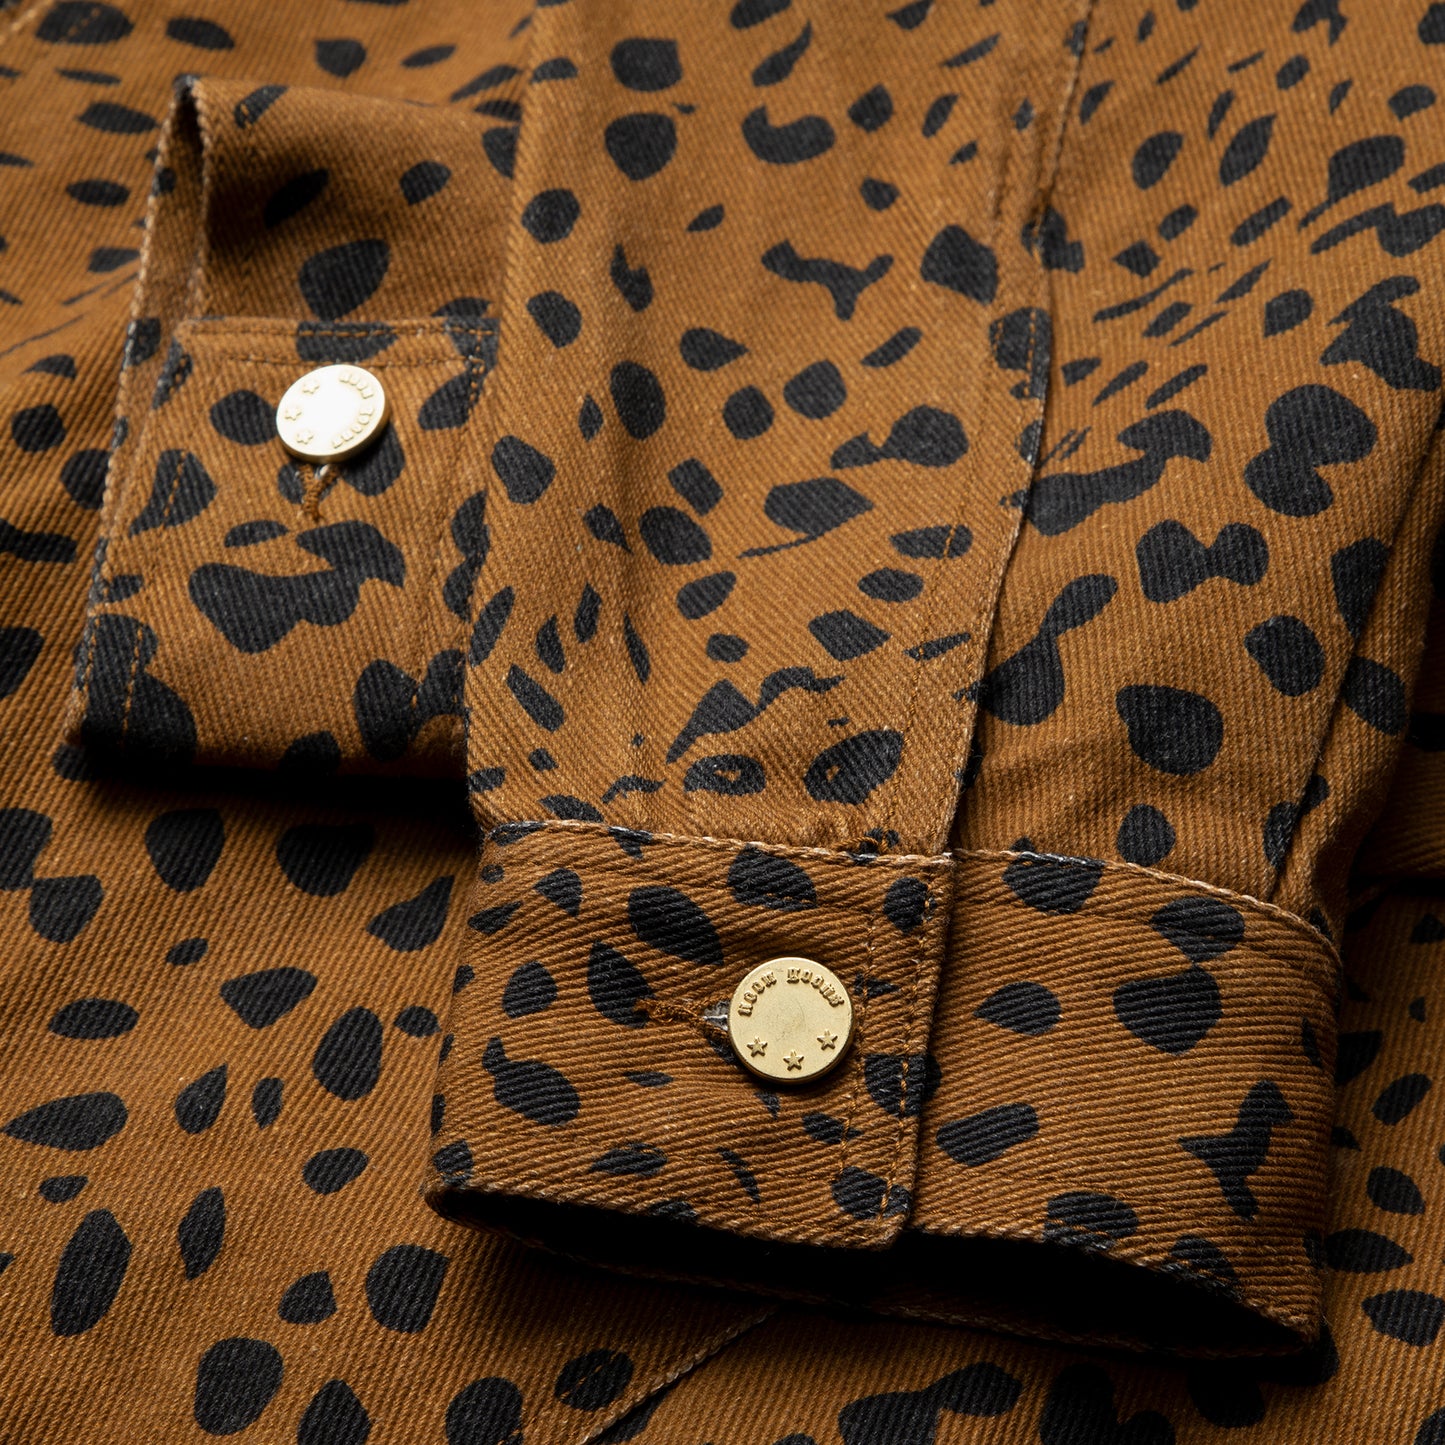 Noon Goons Go Leopard Denim Jacket (Brown Leopard)